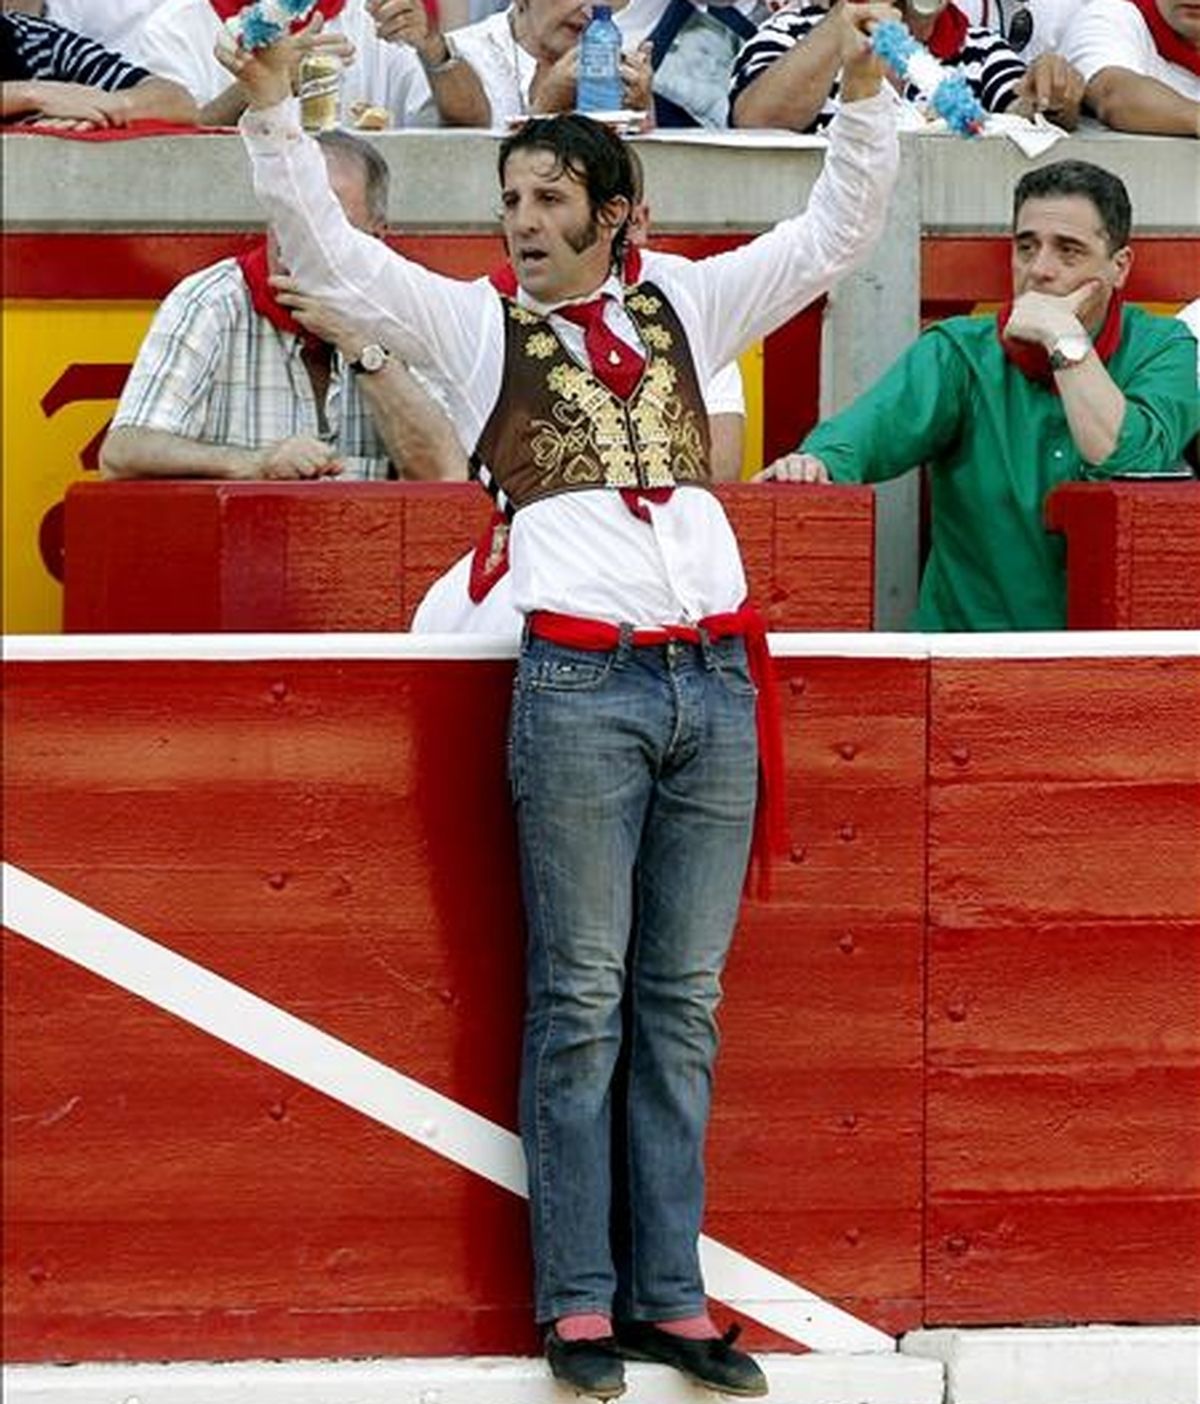 El torero Juan José Padilla, con pantalones vaqueros, intenta poner un par de banderillas a su segundo de la tarde durante la corrida de toros celebrada esta tarde en la Plaza de Pamplona con motivo de las Fiestas de San Fermín 2010. EFE